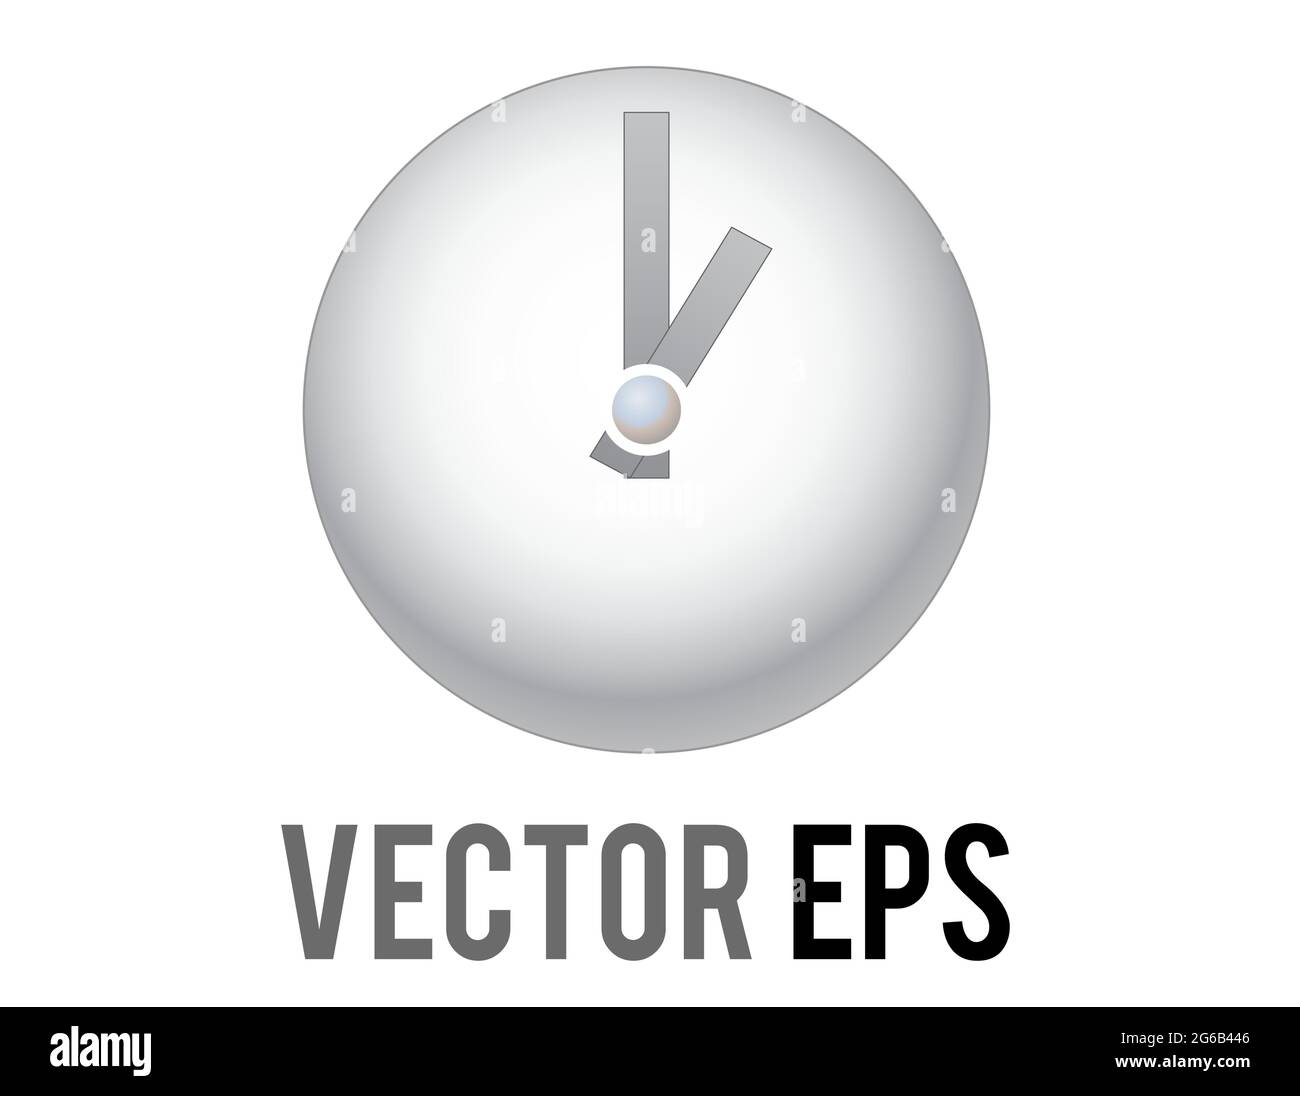 Der Vektor glänzte silberne Zeituhr-Symbol mit grauen Stunden, Minutenzeiger und weißem Gesicht Stock Vektor